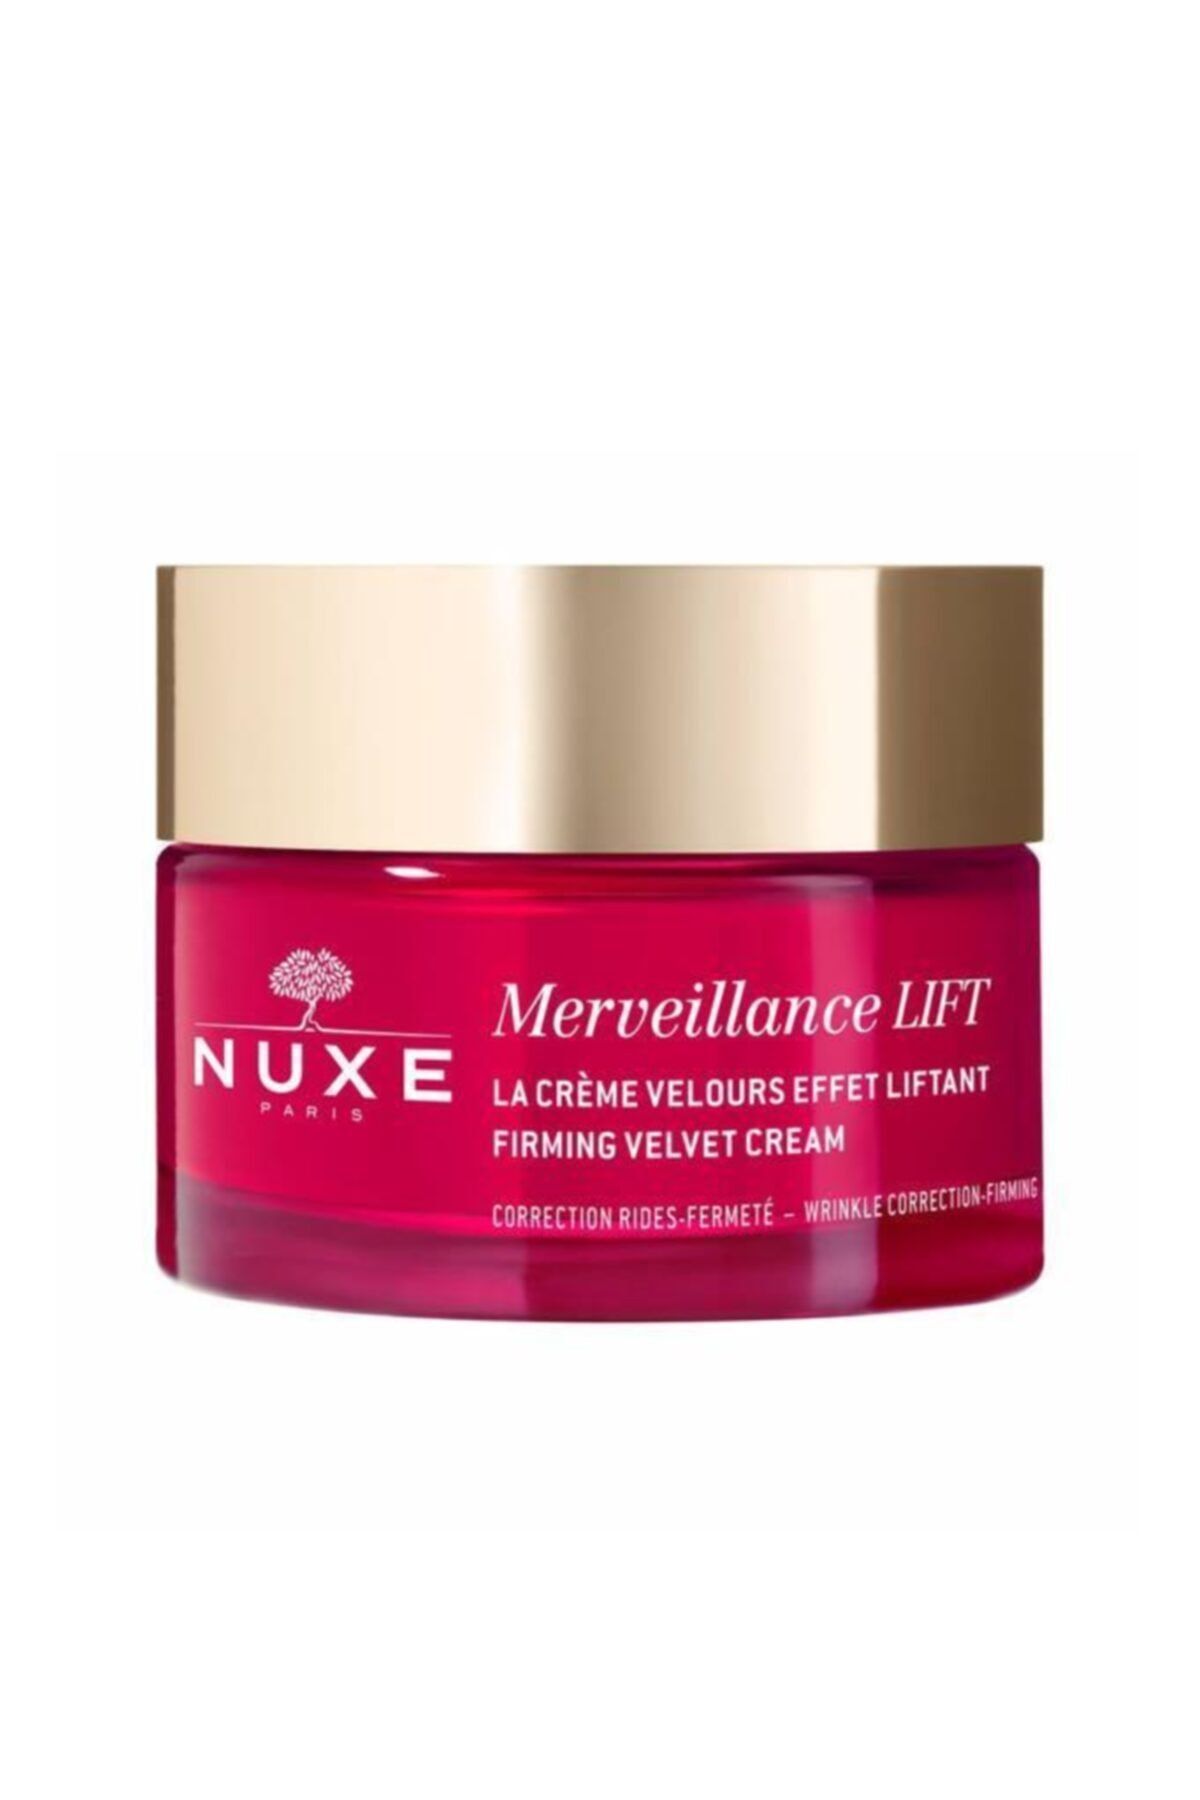 Nuxe Merveillance Lift Firming Velvet Cream 50 ml - Kuru Cilt